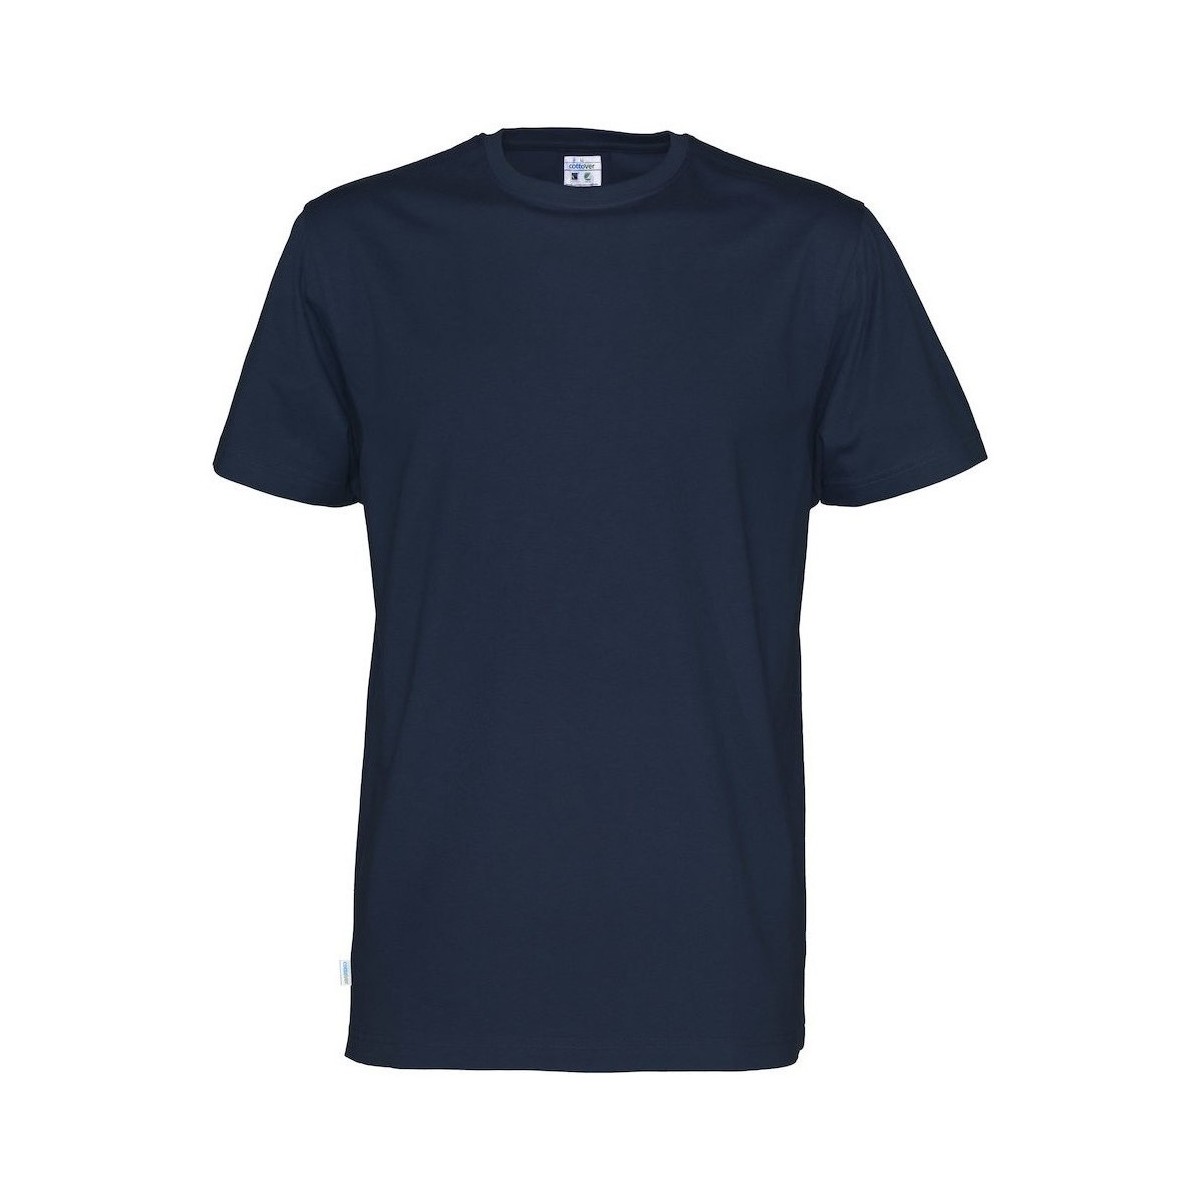 Vêtements Homme T-shirts manches longues Cottover UB690 Bleu